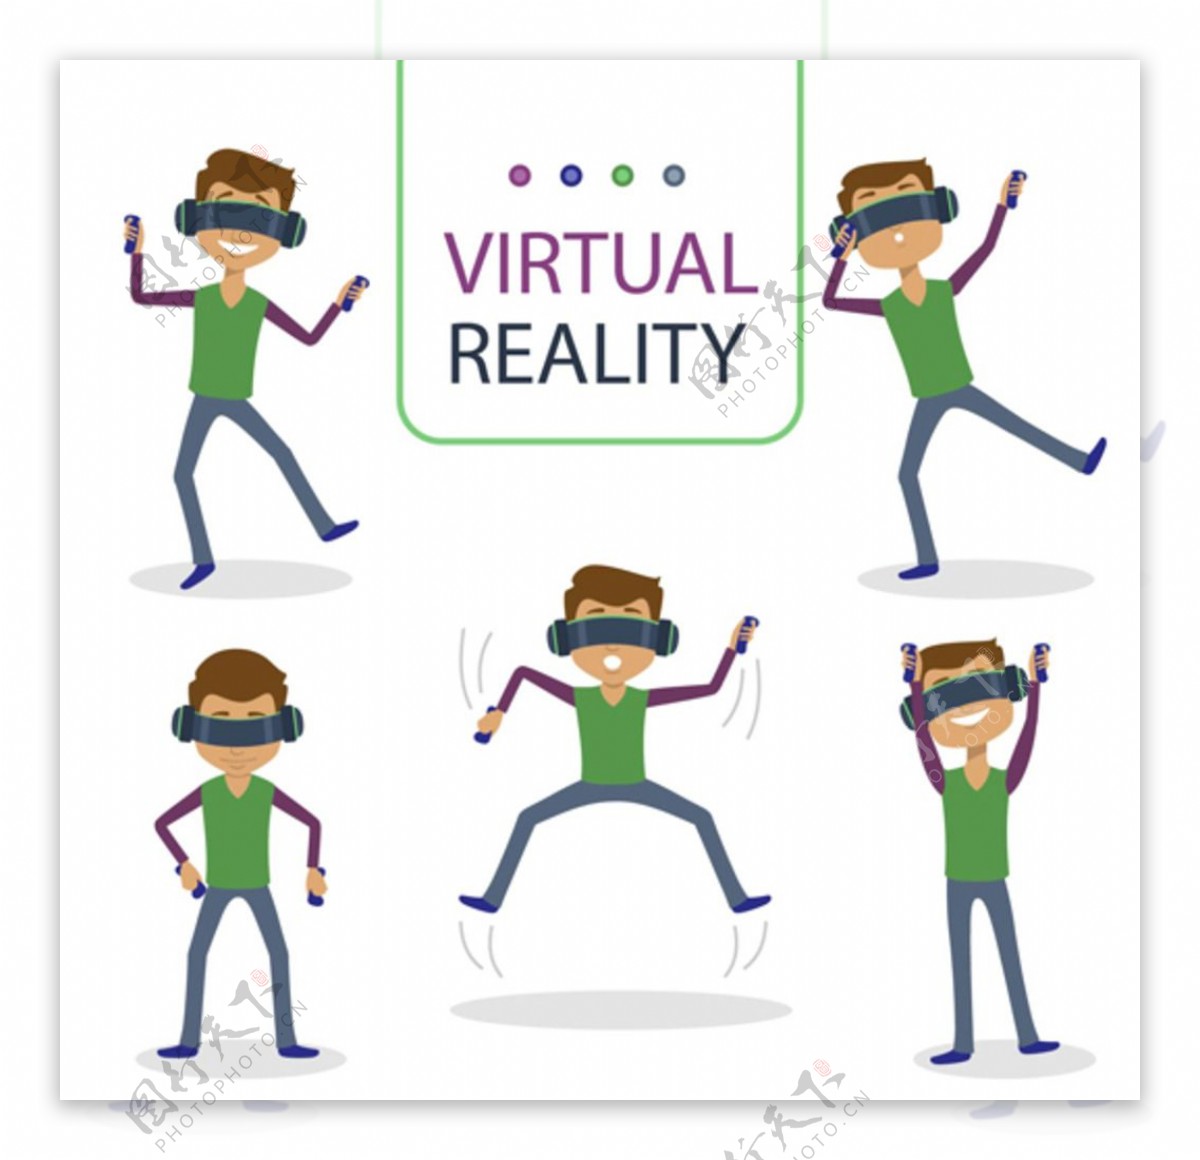 戴VR虚拟现实眼镜玩游戏的青年